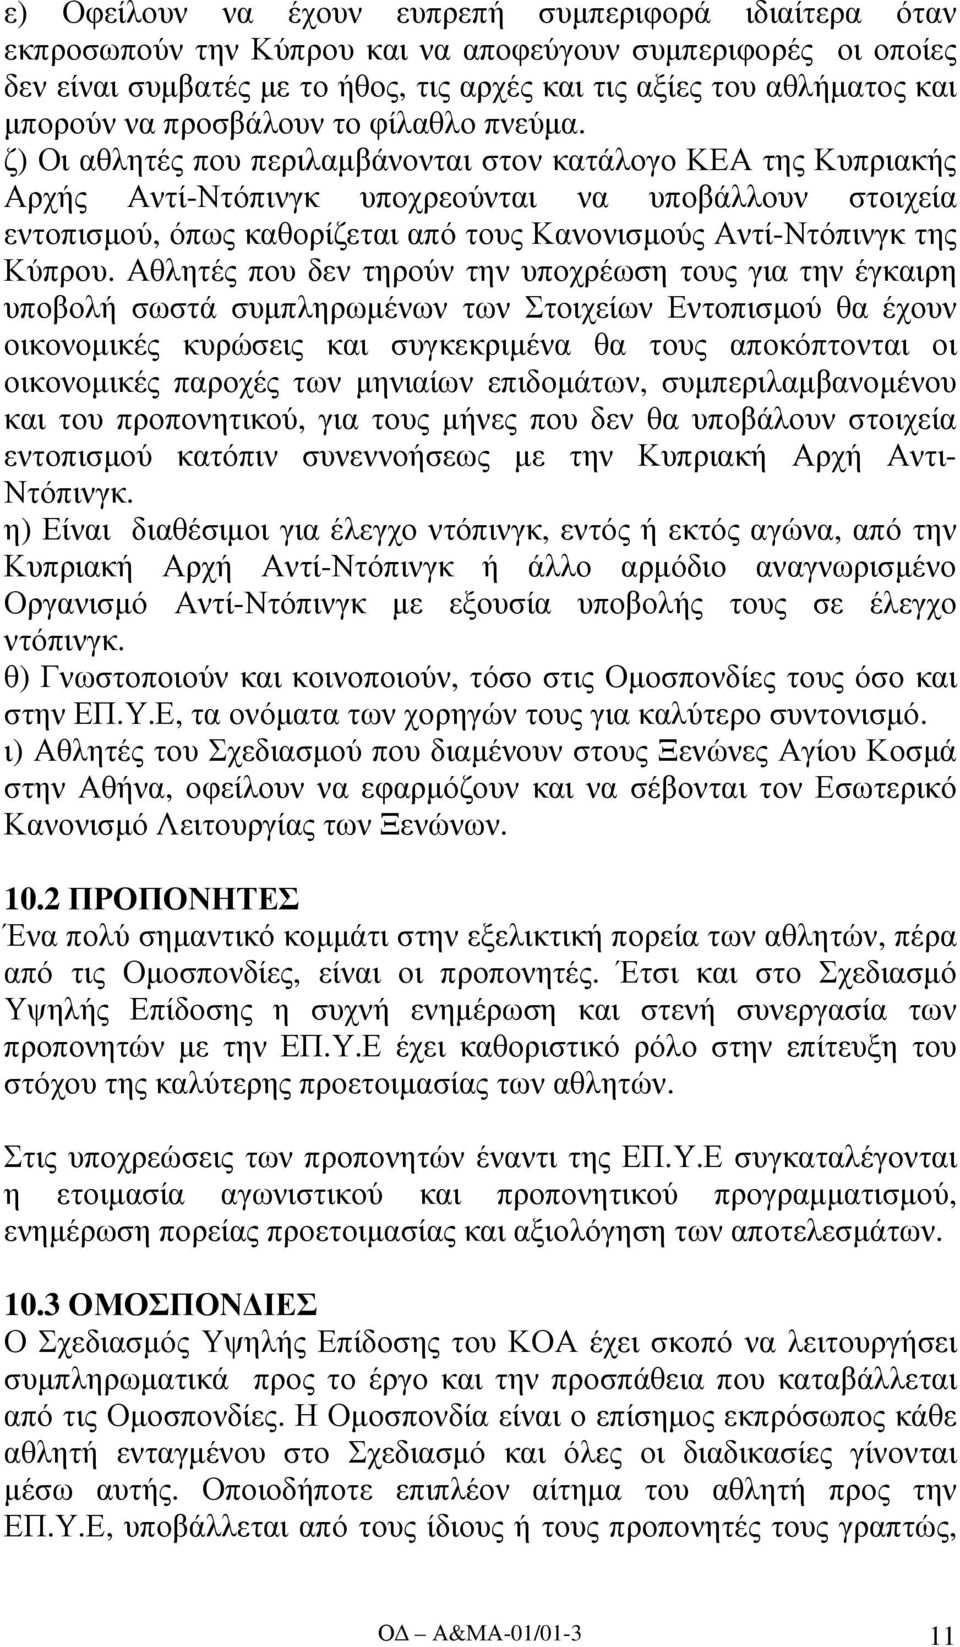 ζ) Οι αθλητές που περιλαµβάνονται στον κατάλογο ΚΕΑ της Κυπριακής Αρχής Αντί-Ντόπινγκ υποχρεούνται να υποβάλλουν στοιχεία εντοπισµού, όπως καθορίζεται από τους Κανονισµούς Αντί-Ντόπινγκ της Κύπρου.